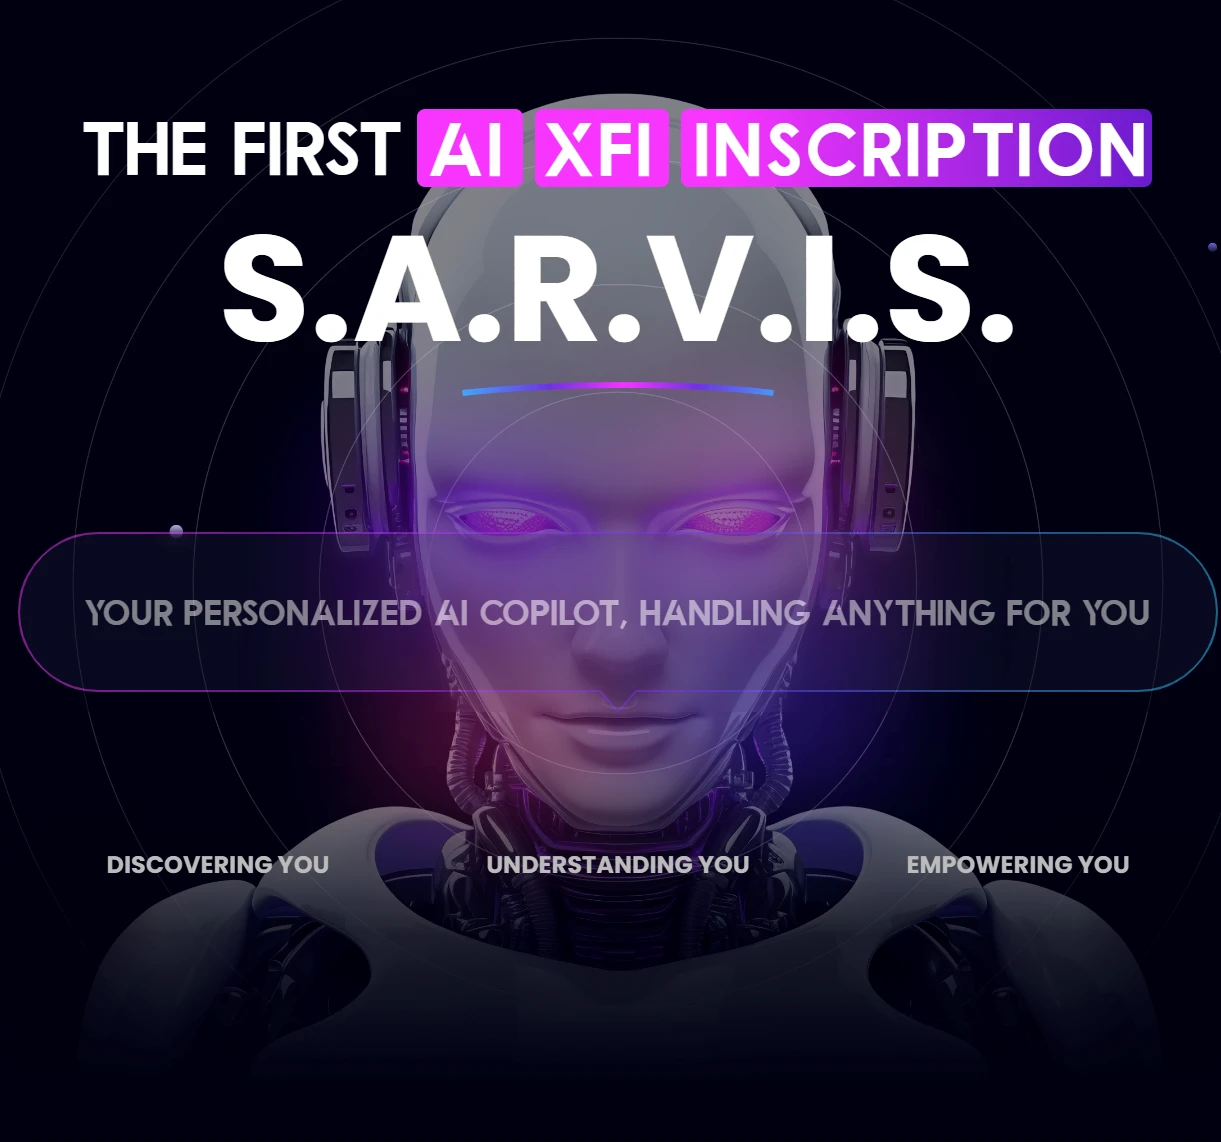 一篇文章解读了AI+TwitterFi铭文项目S.A.R.V.I.S.